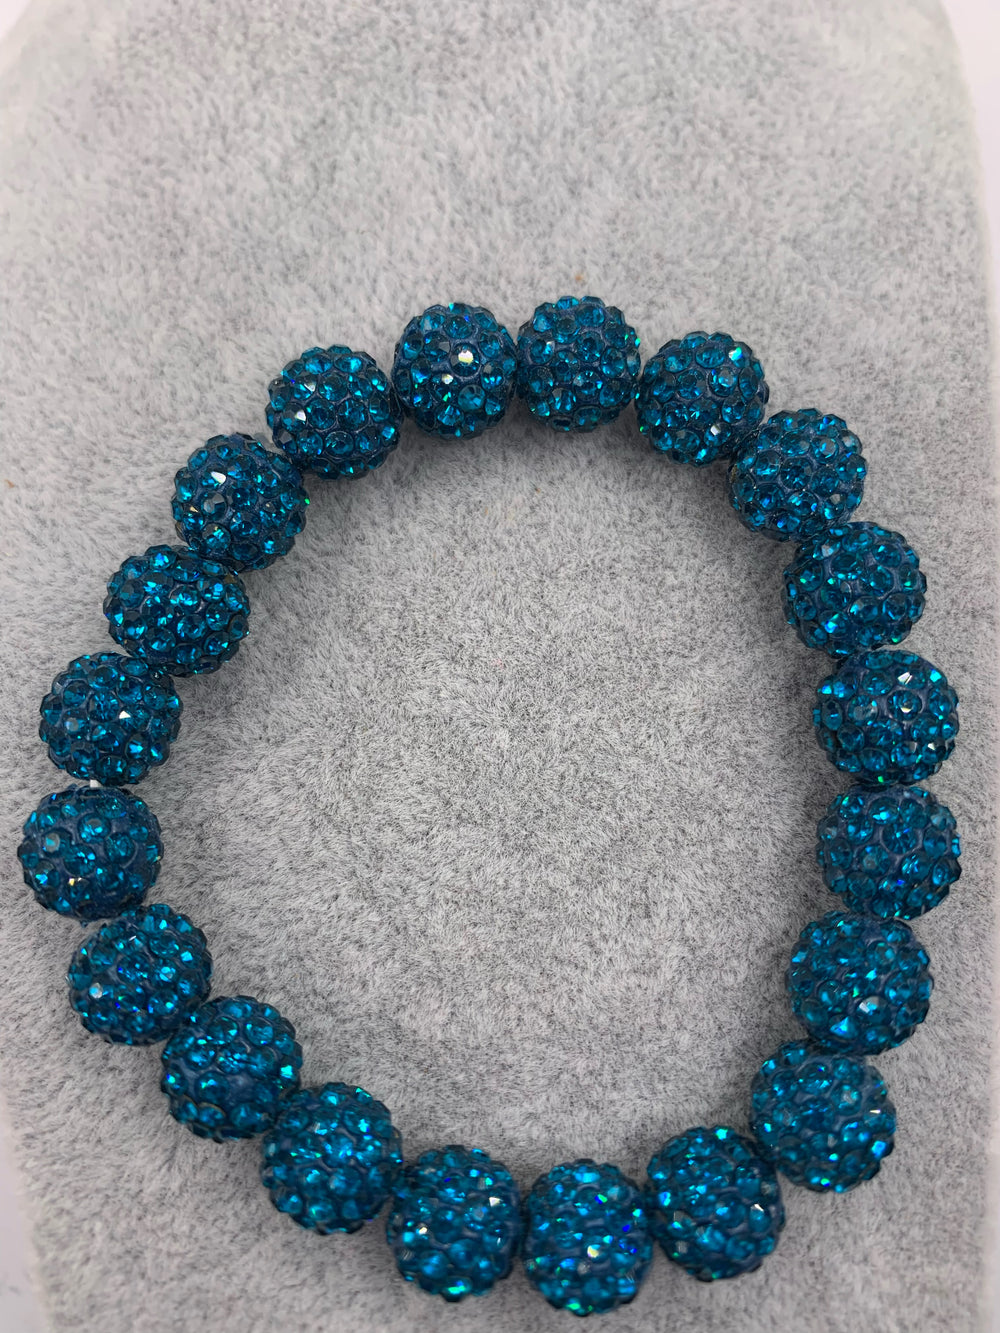 Crystal Bead Pave Stretch Bracelet-Blue Zircon